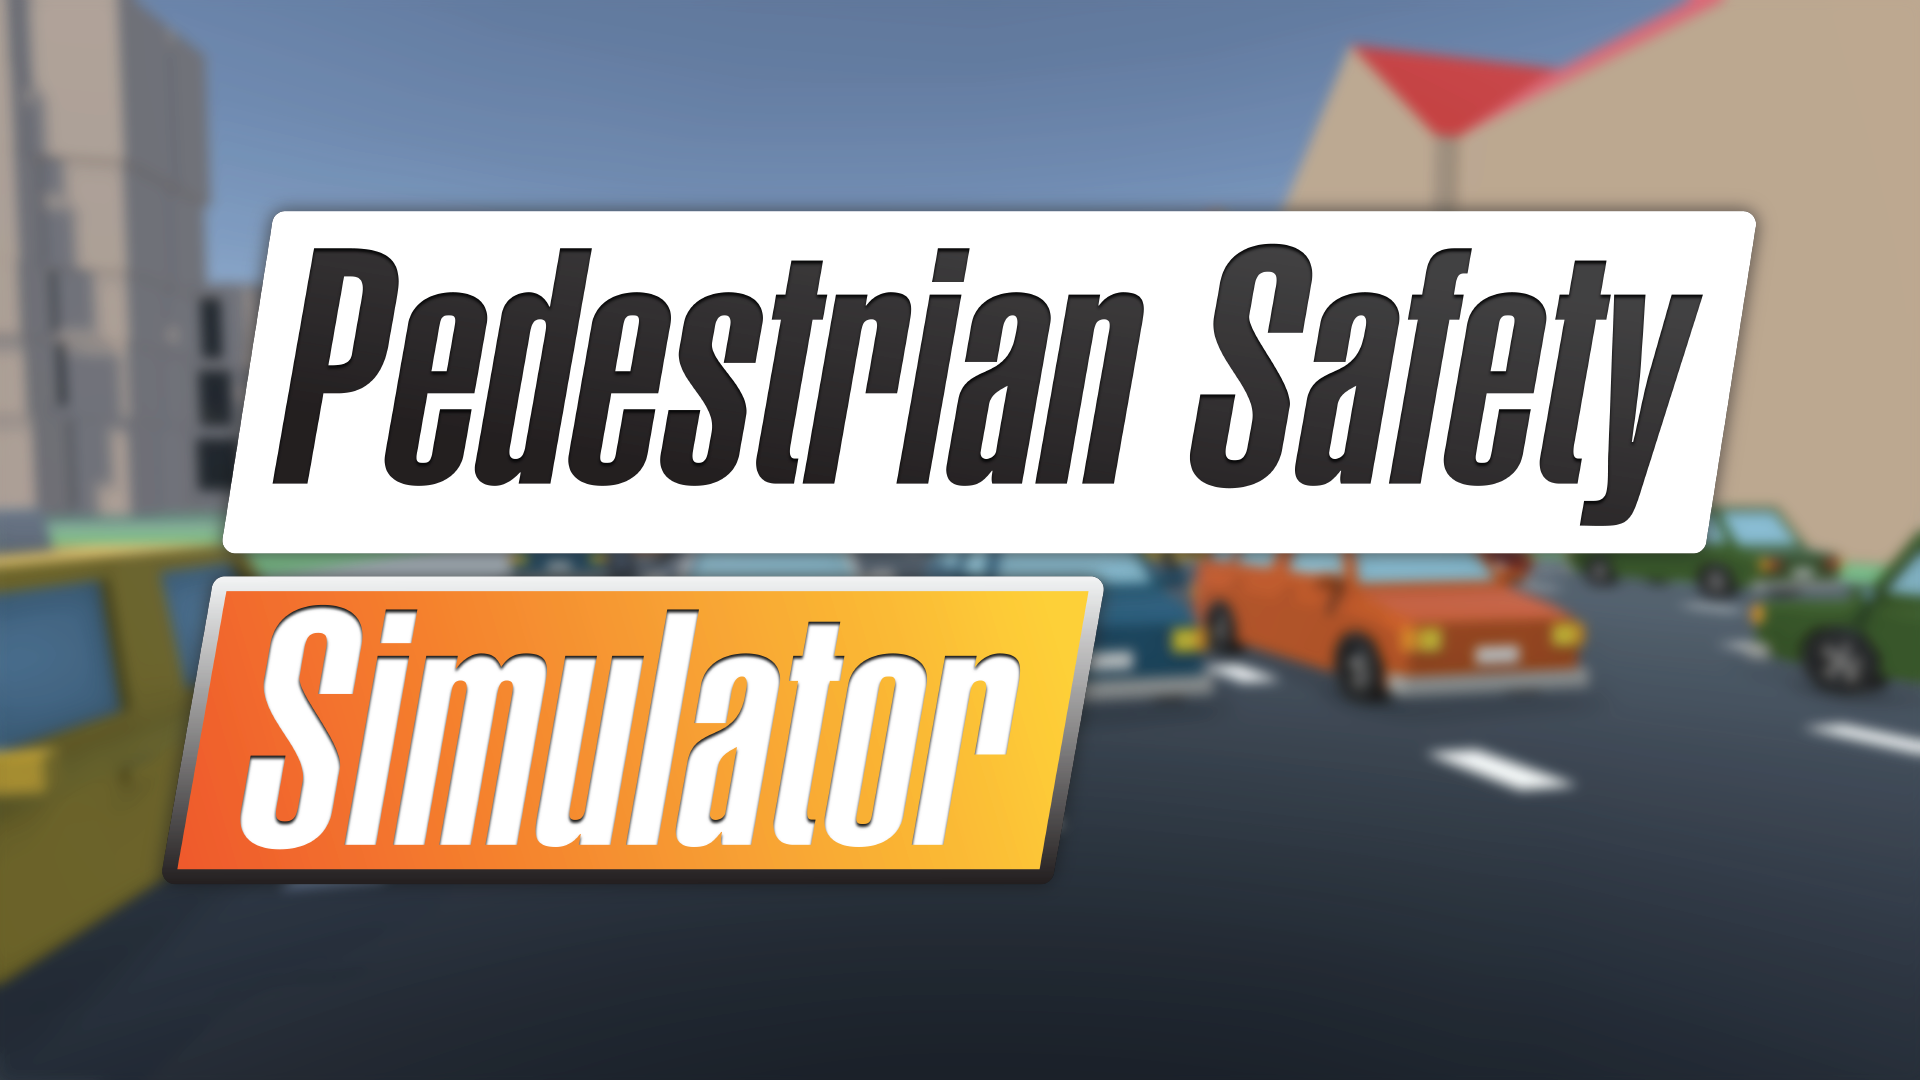 Pedestrian Safety Simulator